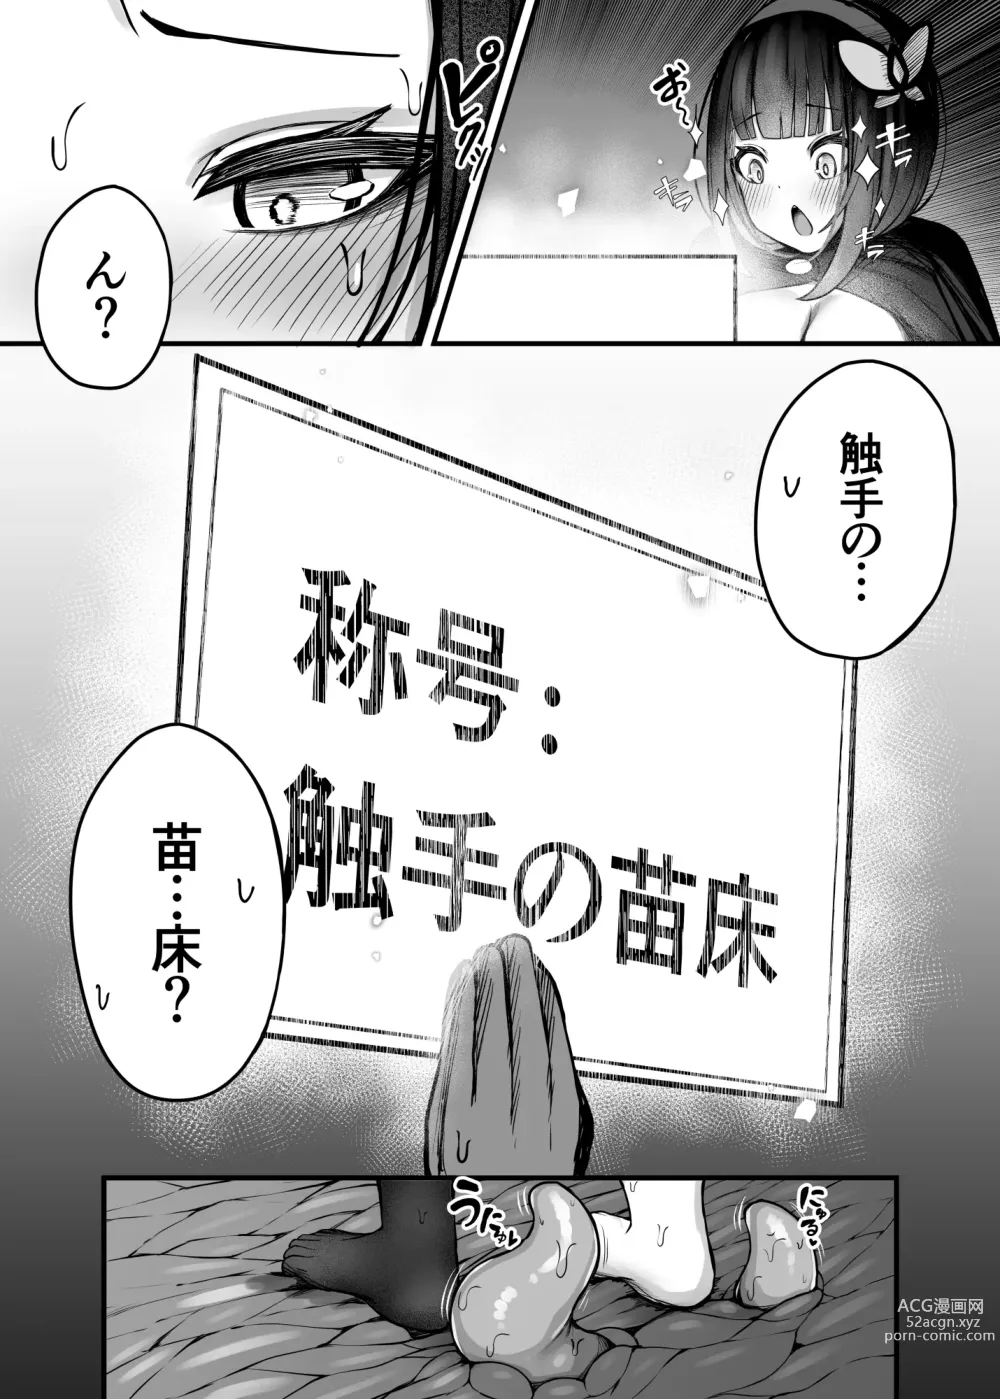 Page 27 of doujinshi Moto daiken masuta no boken-sha-chan ga shokushu no hisomu danjon ni chosen suru hanashi